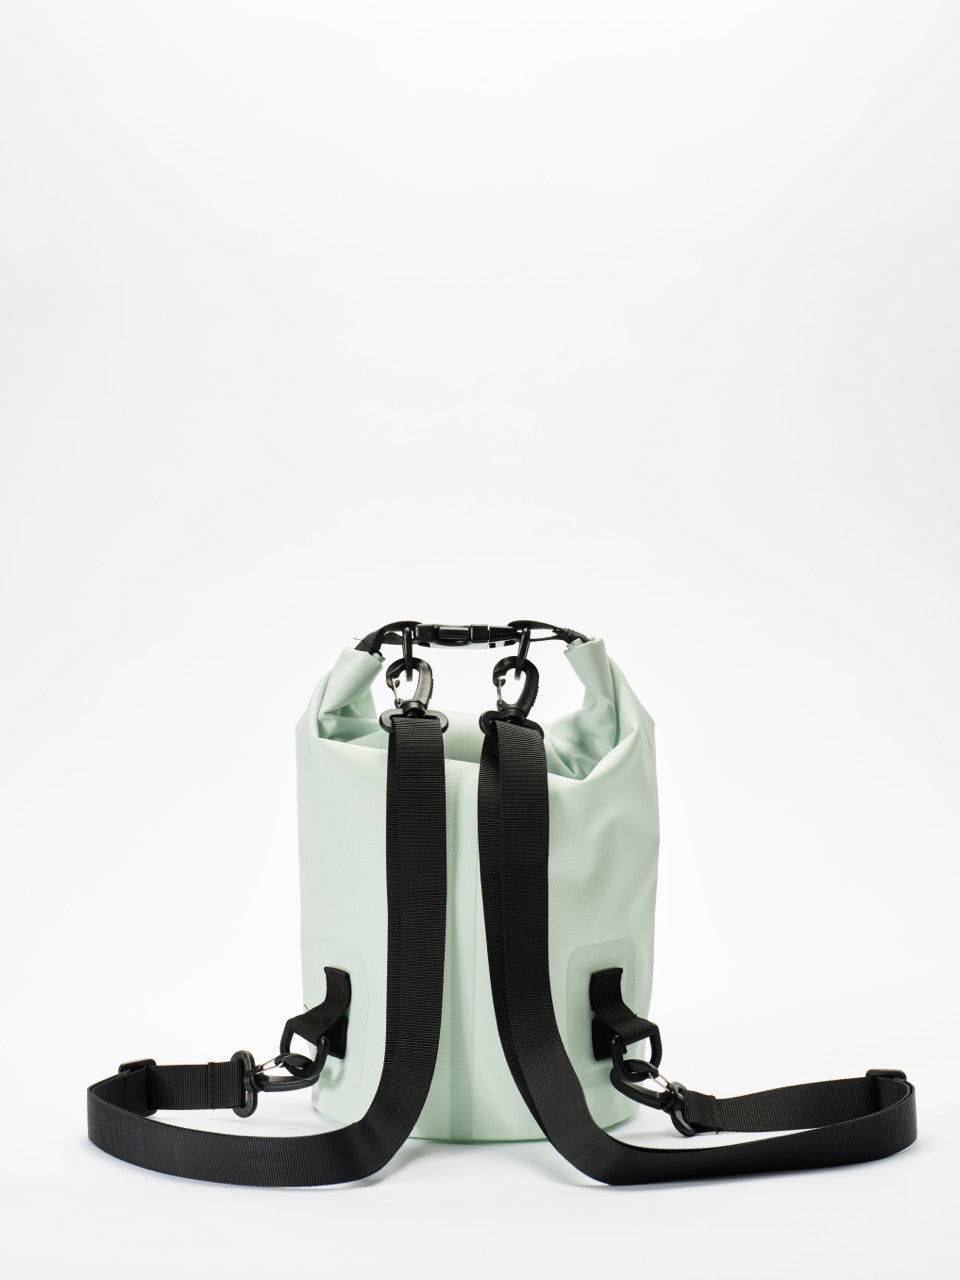 Aare Schwumm - 7 Liter Dry Bag - Wave Green